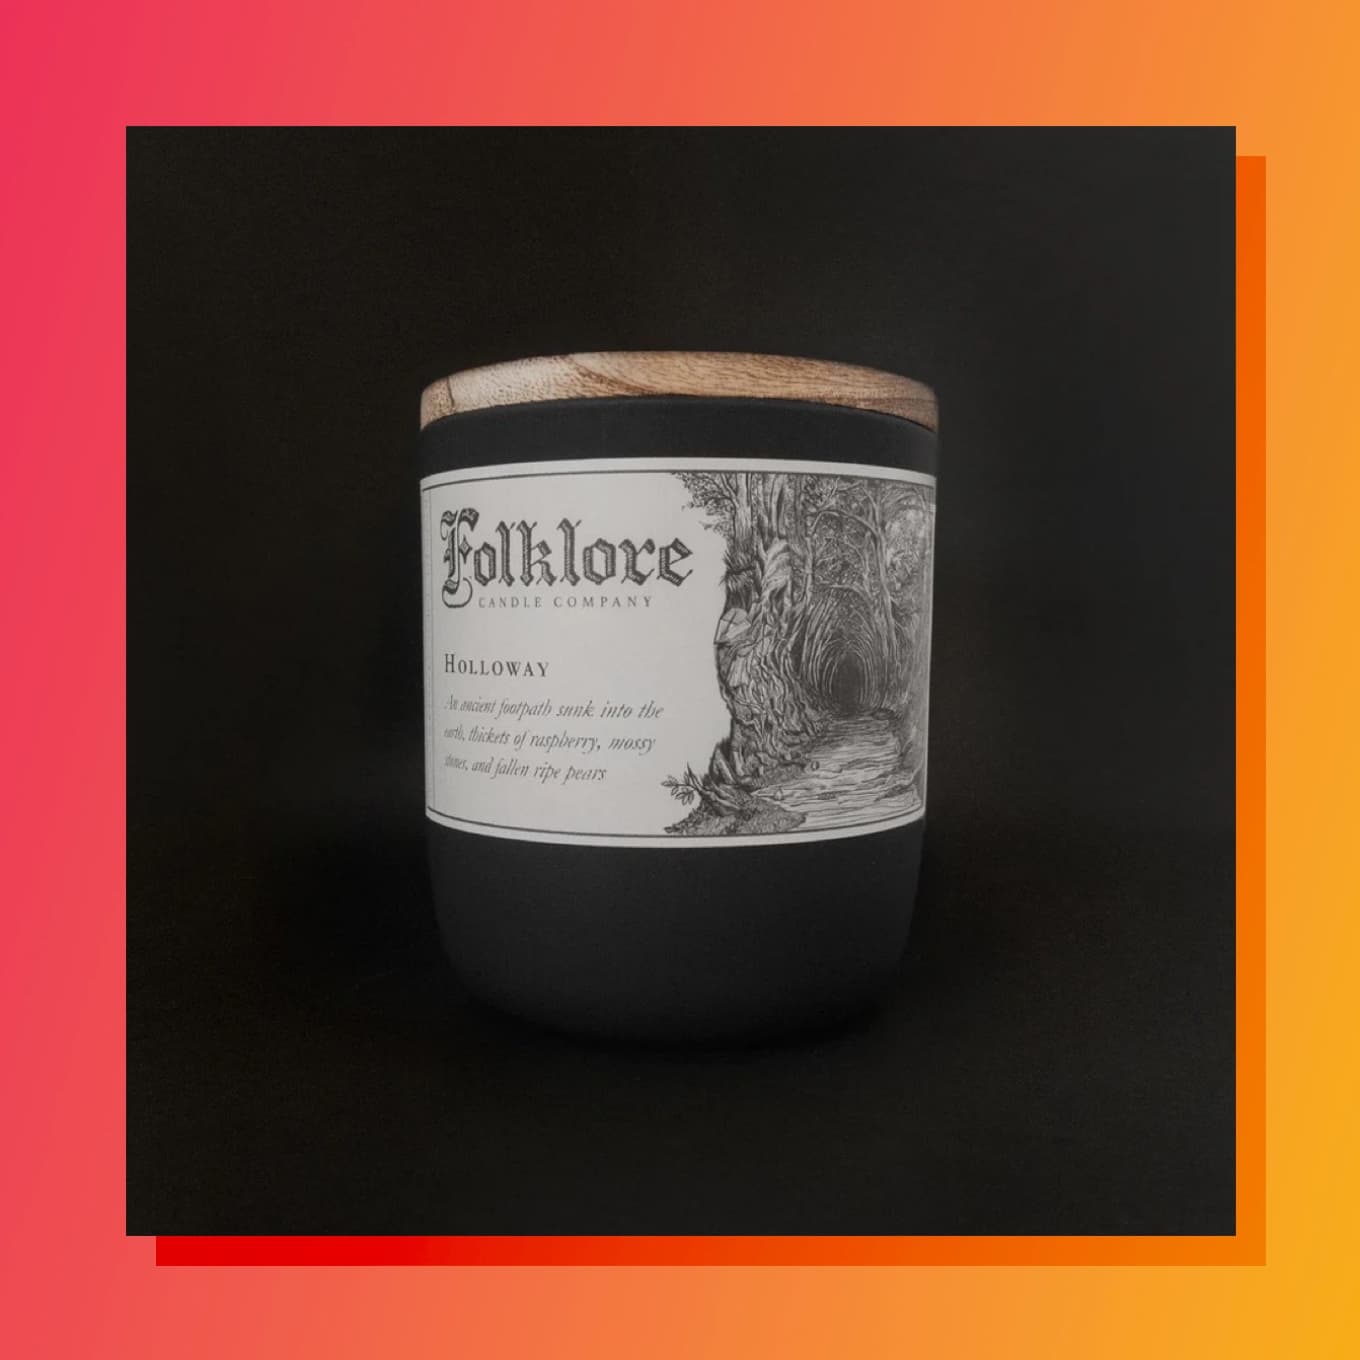 Dark Folklore candle on a dark background